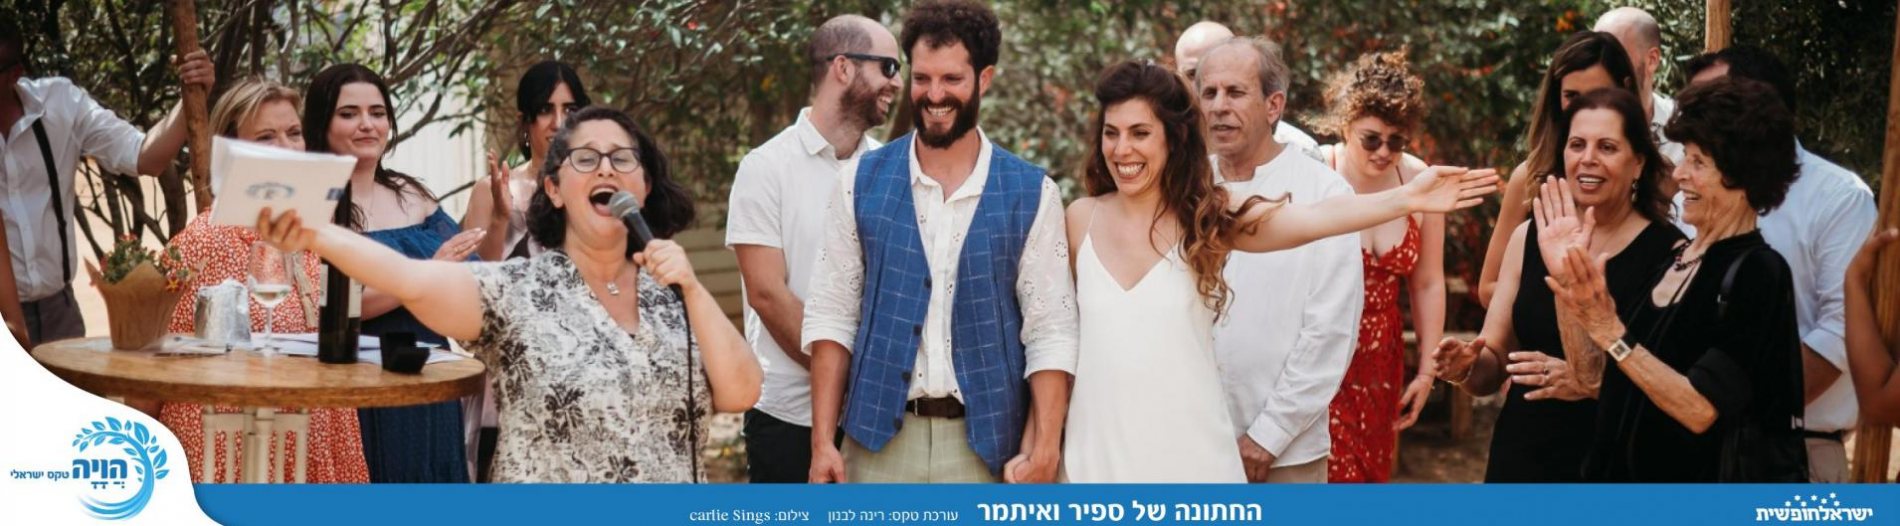 הויה - טקס ישראלי